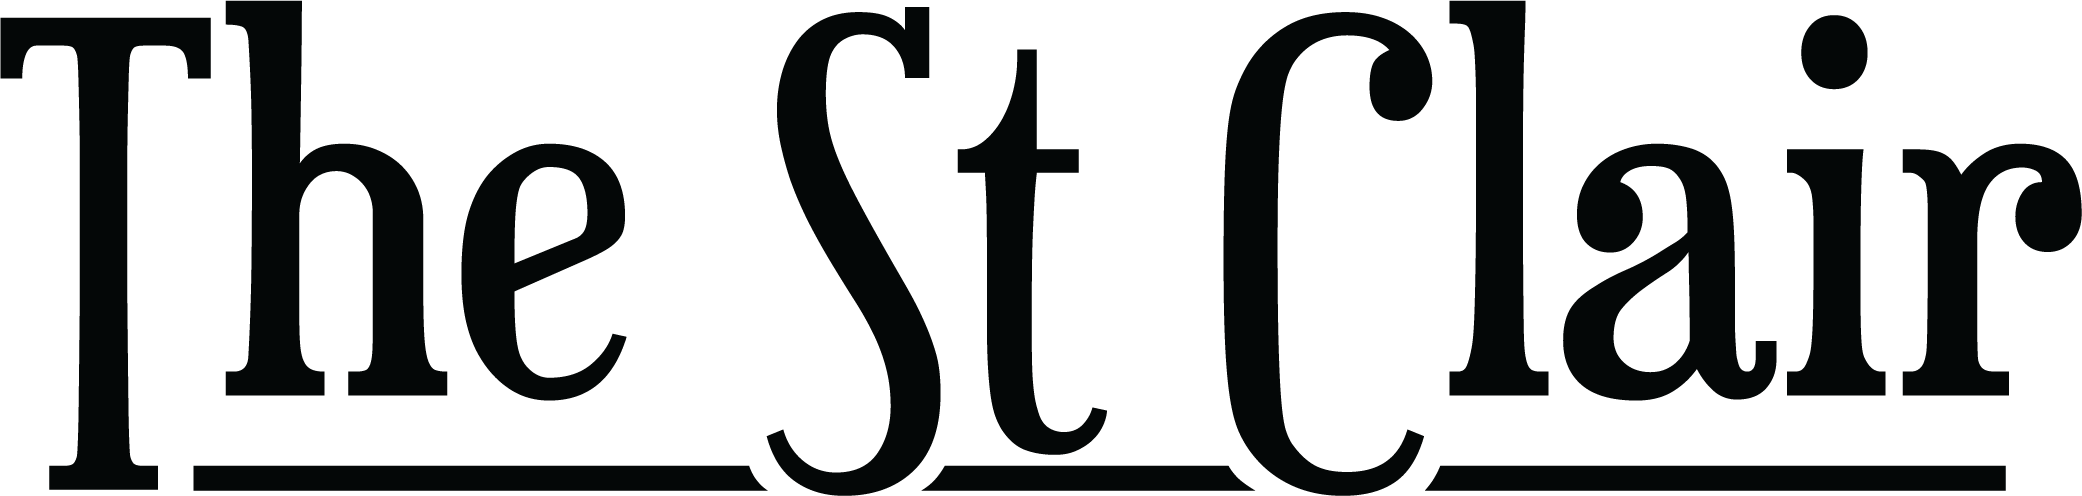 St Clair logo